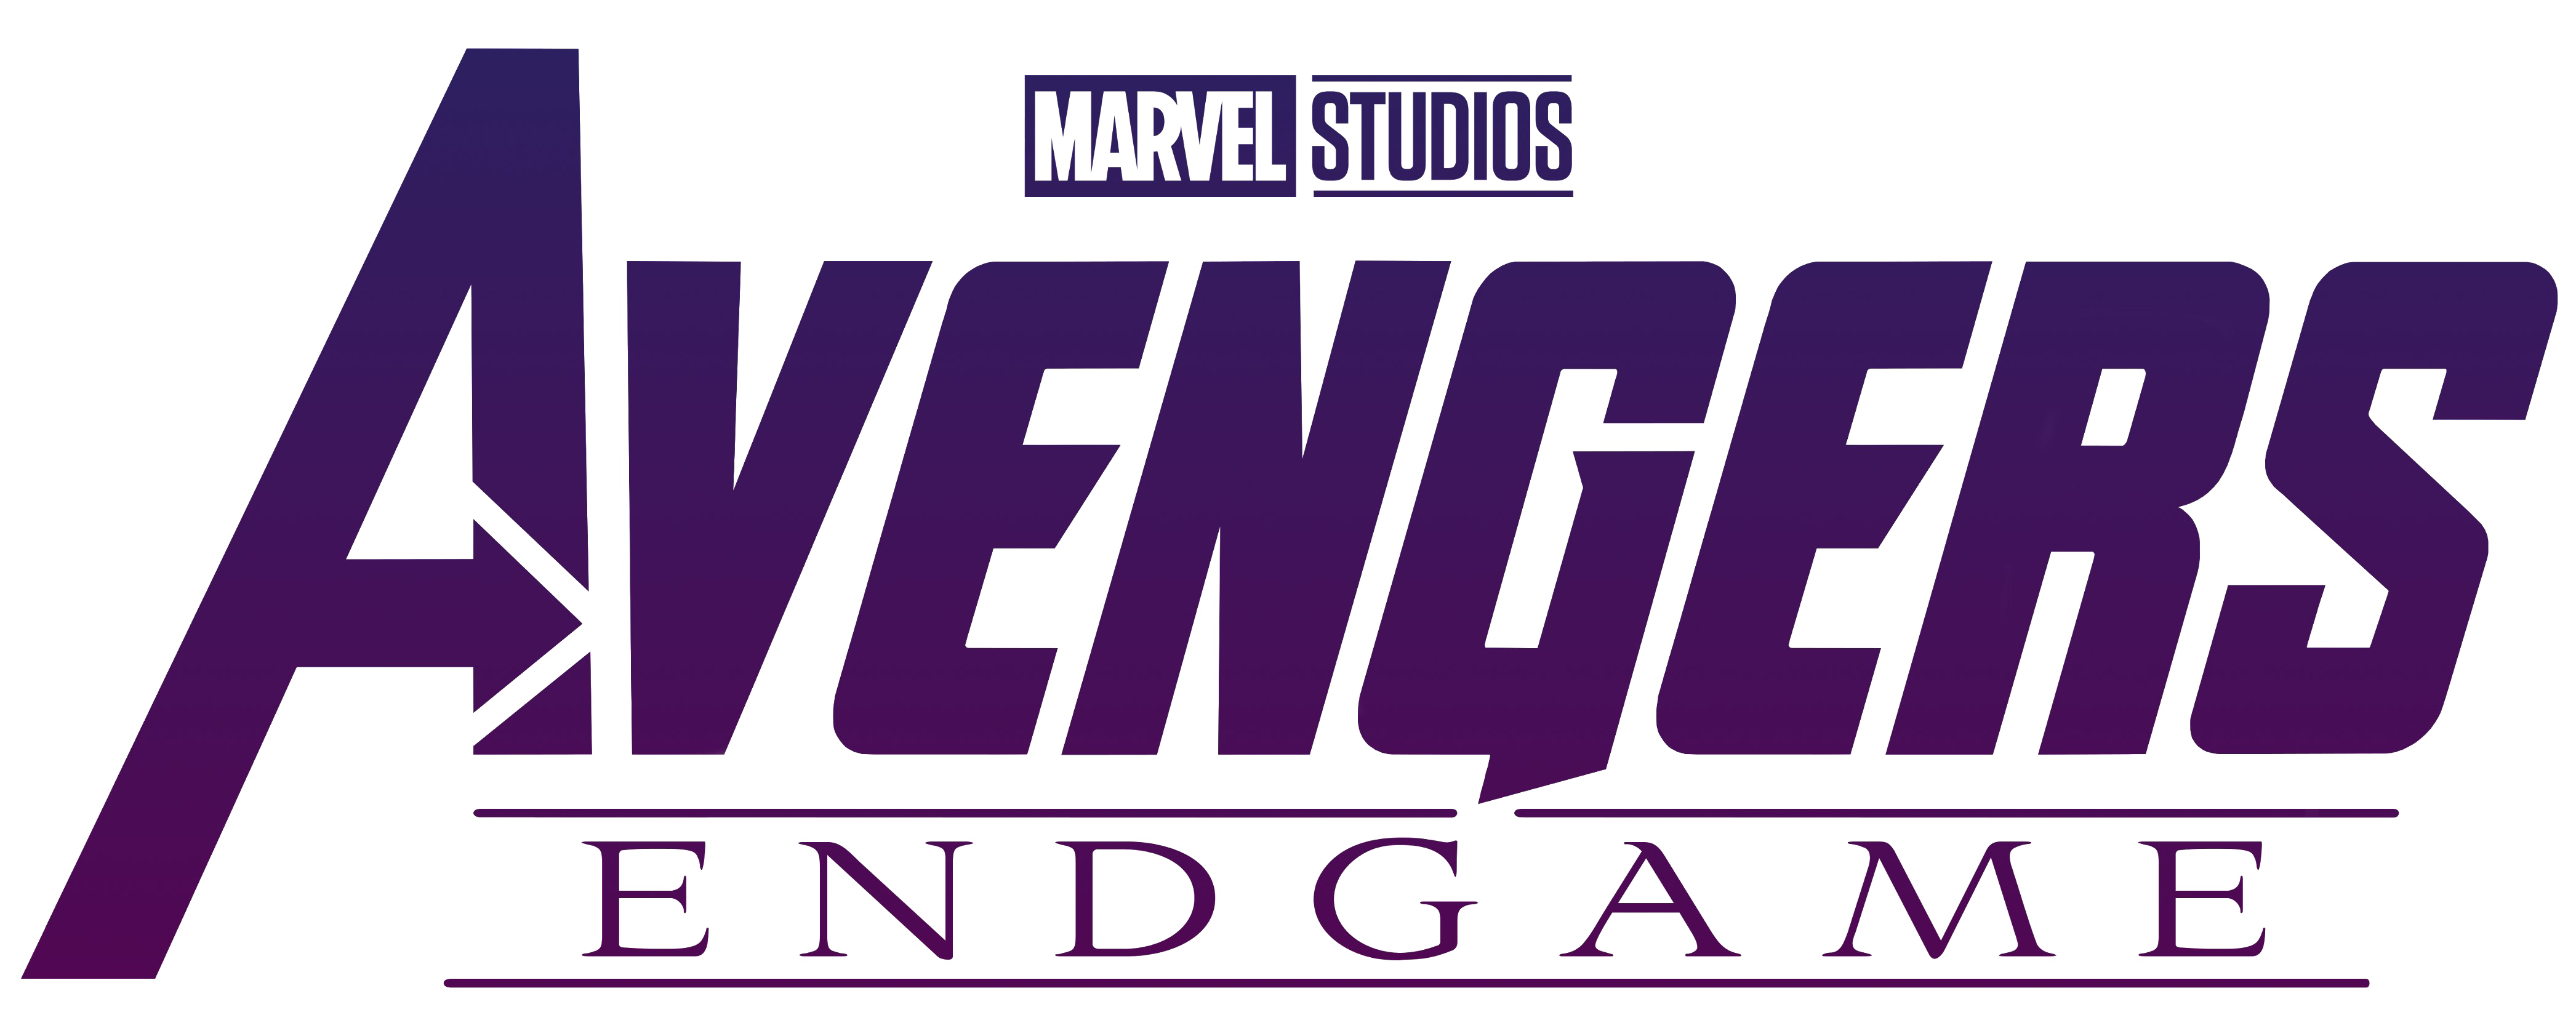 Marvel Studios Avengers Endgame